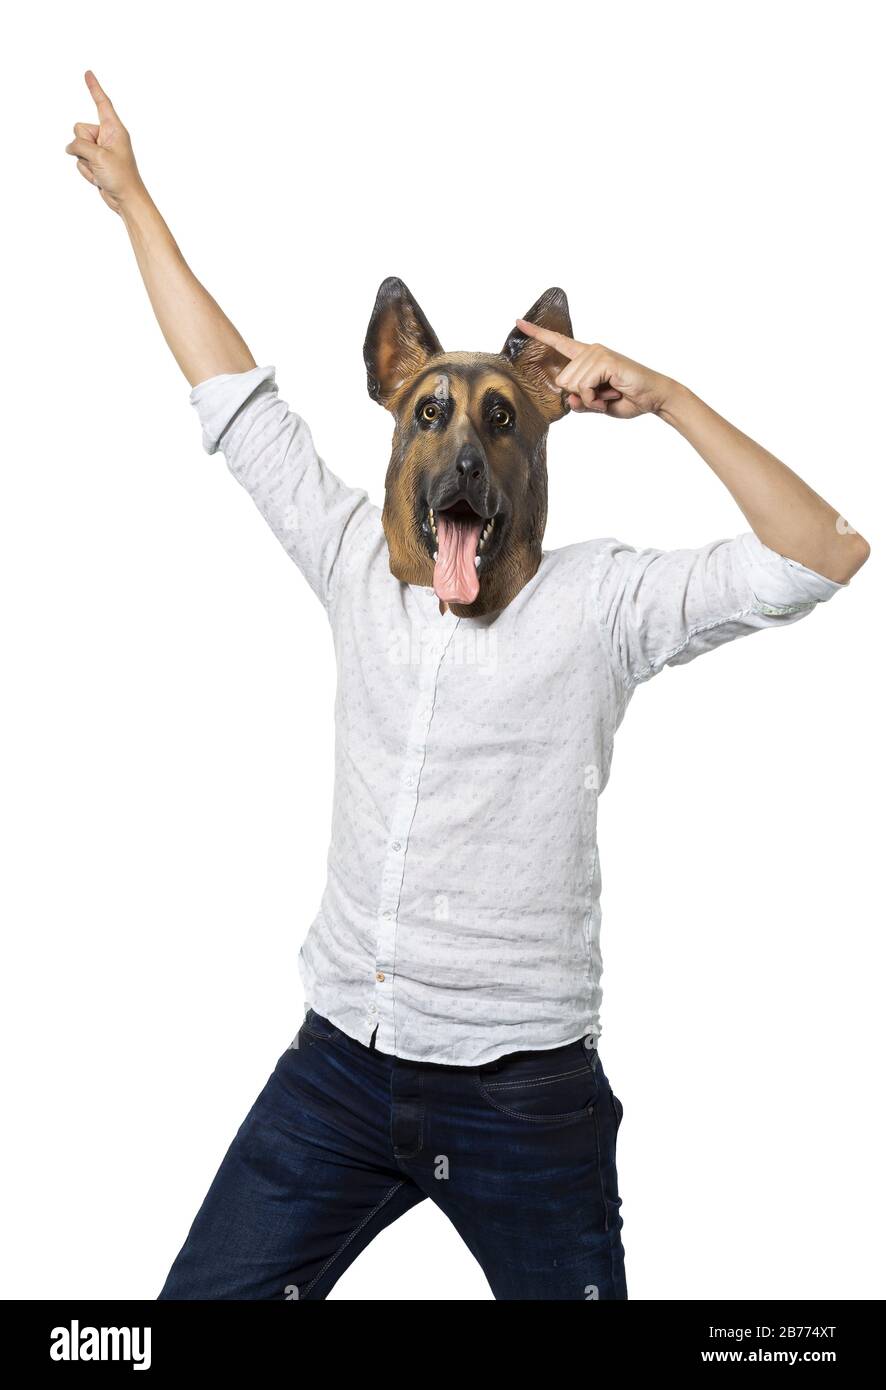 Vertikale Aufnahme eines Männchens in einer Hundemaske exprimierend Glück auf weißem Hintergrund Stockfoto